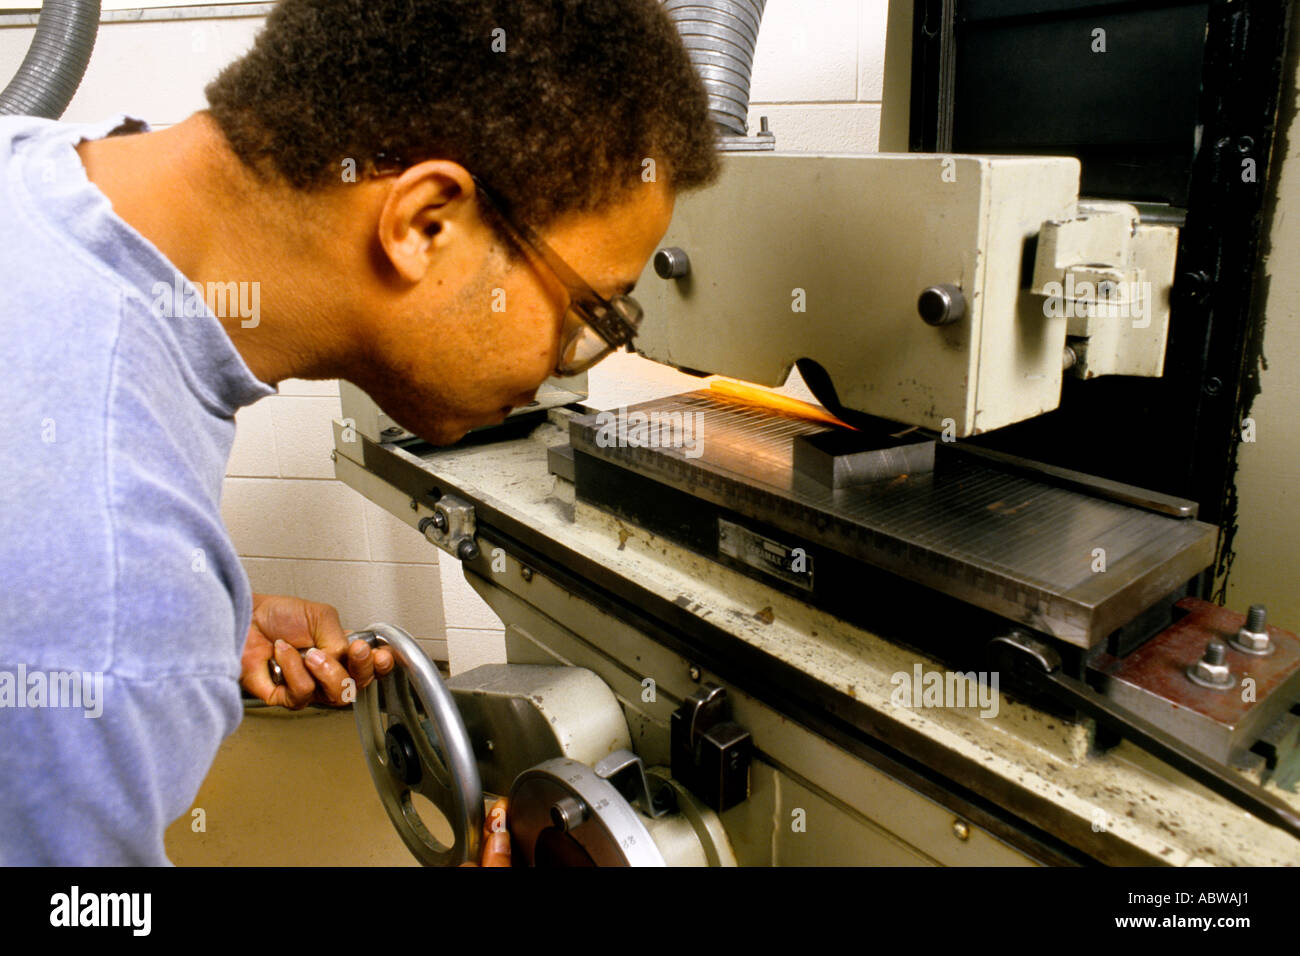 Collegio maschile studente lavora in un negozio di classe sul tornio macchinari con precauzioni di sicurezza Foto Stock